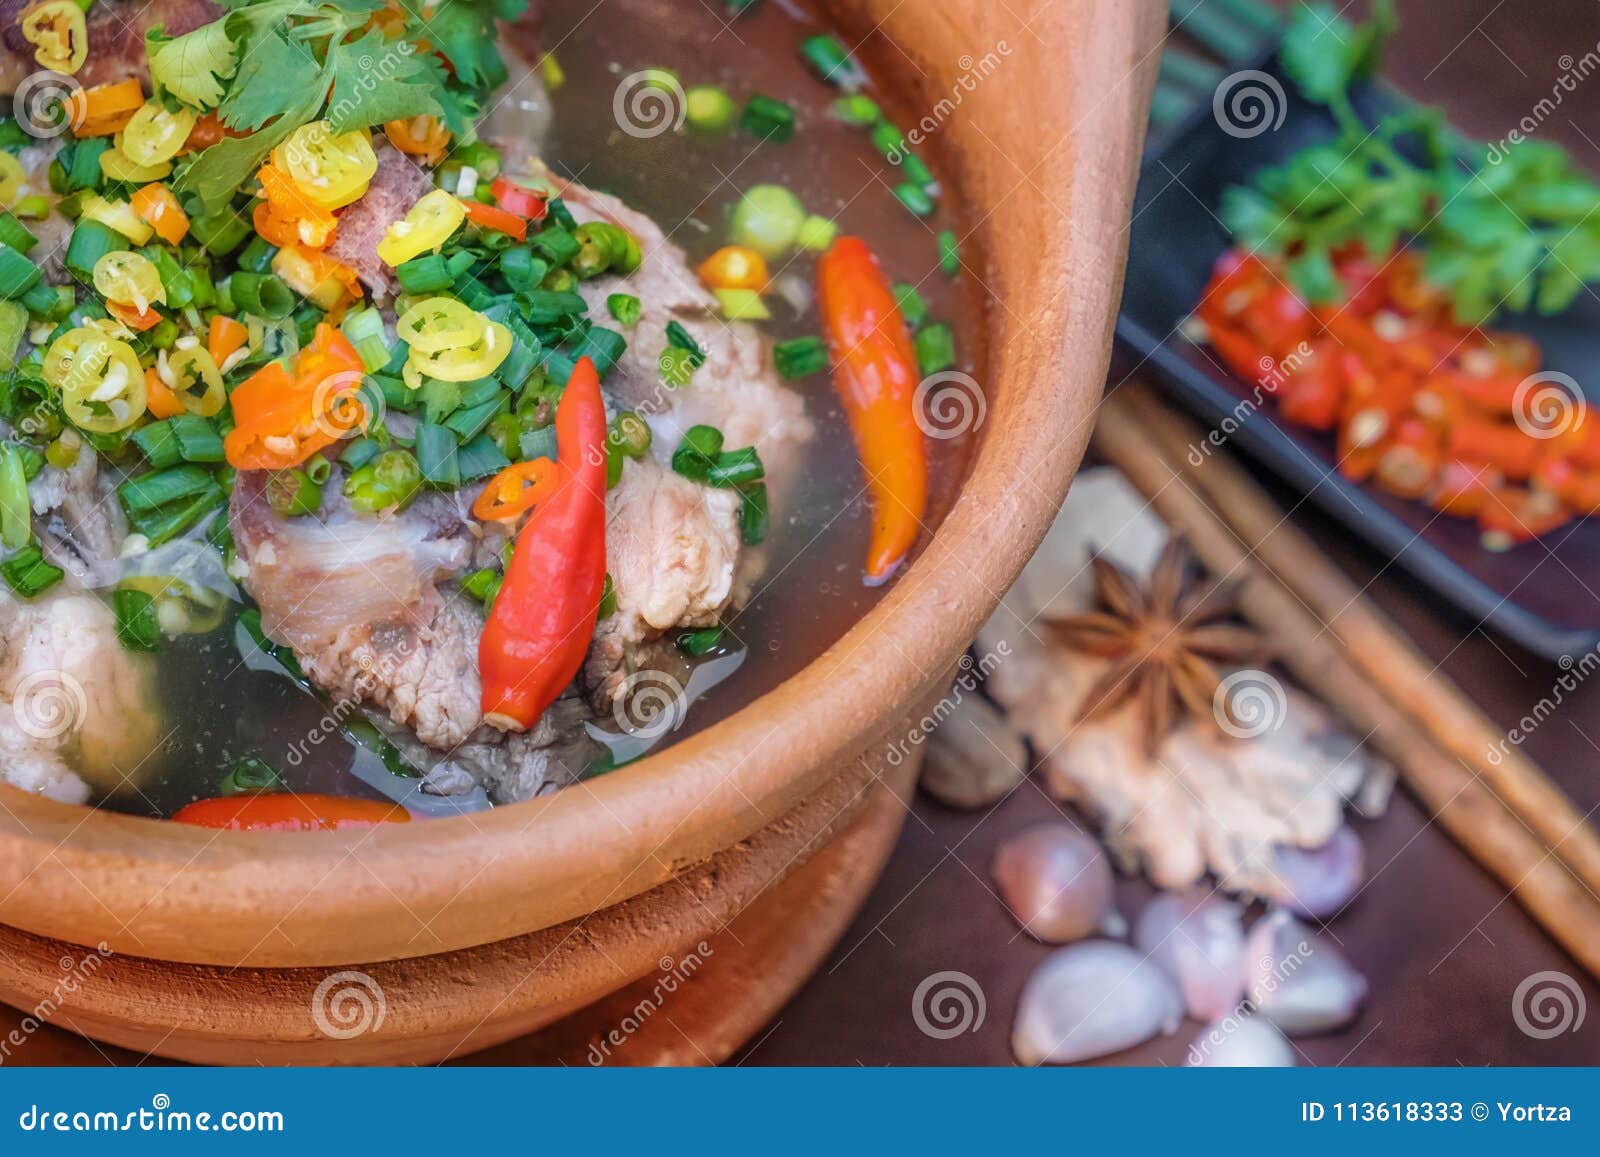 καυτή και πικάντικη σούπα χοιρινού κρέατος με τα τσίλι χορταριών σε μια αγγειοπλαστική